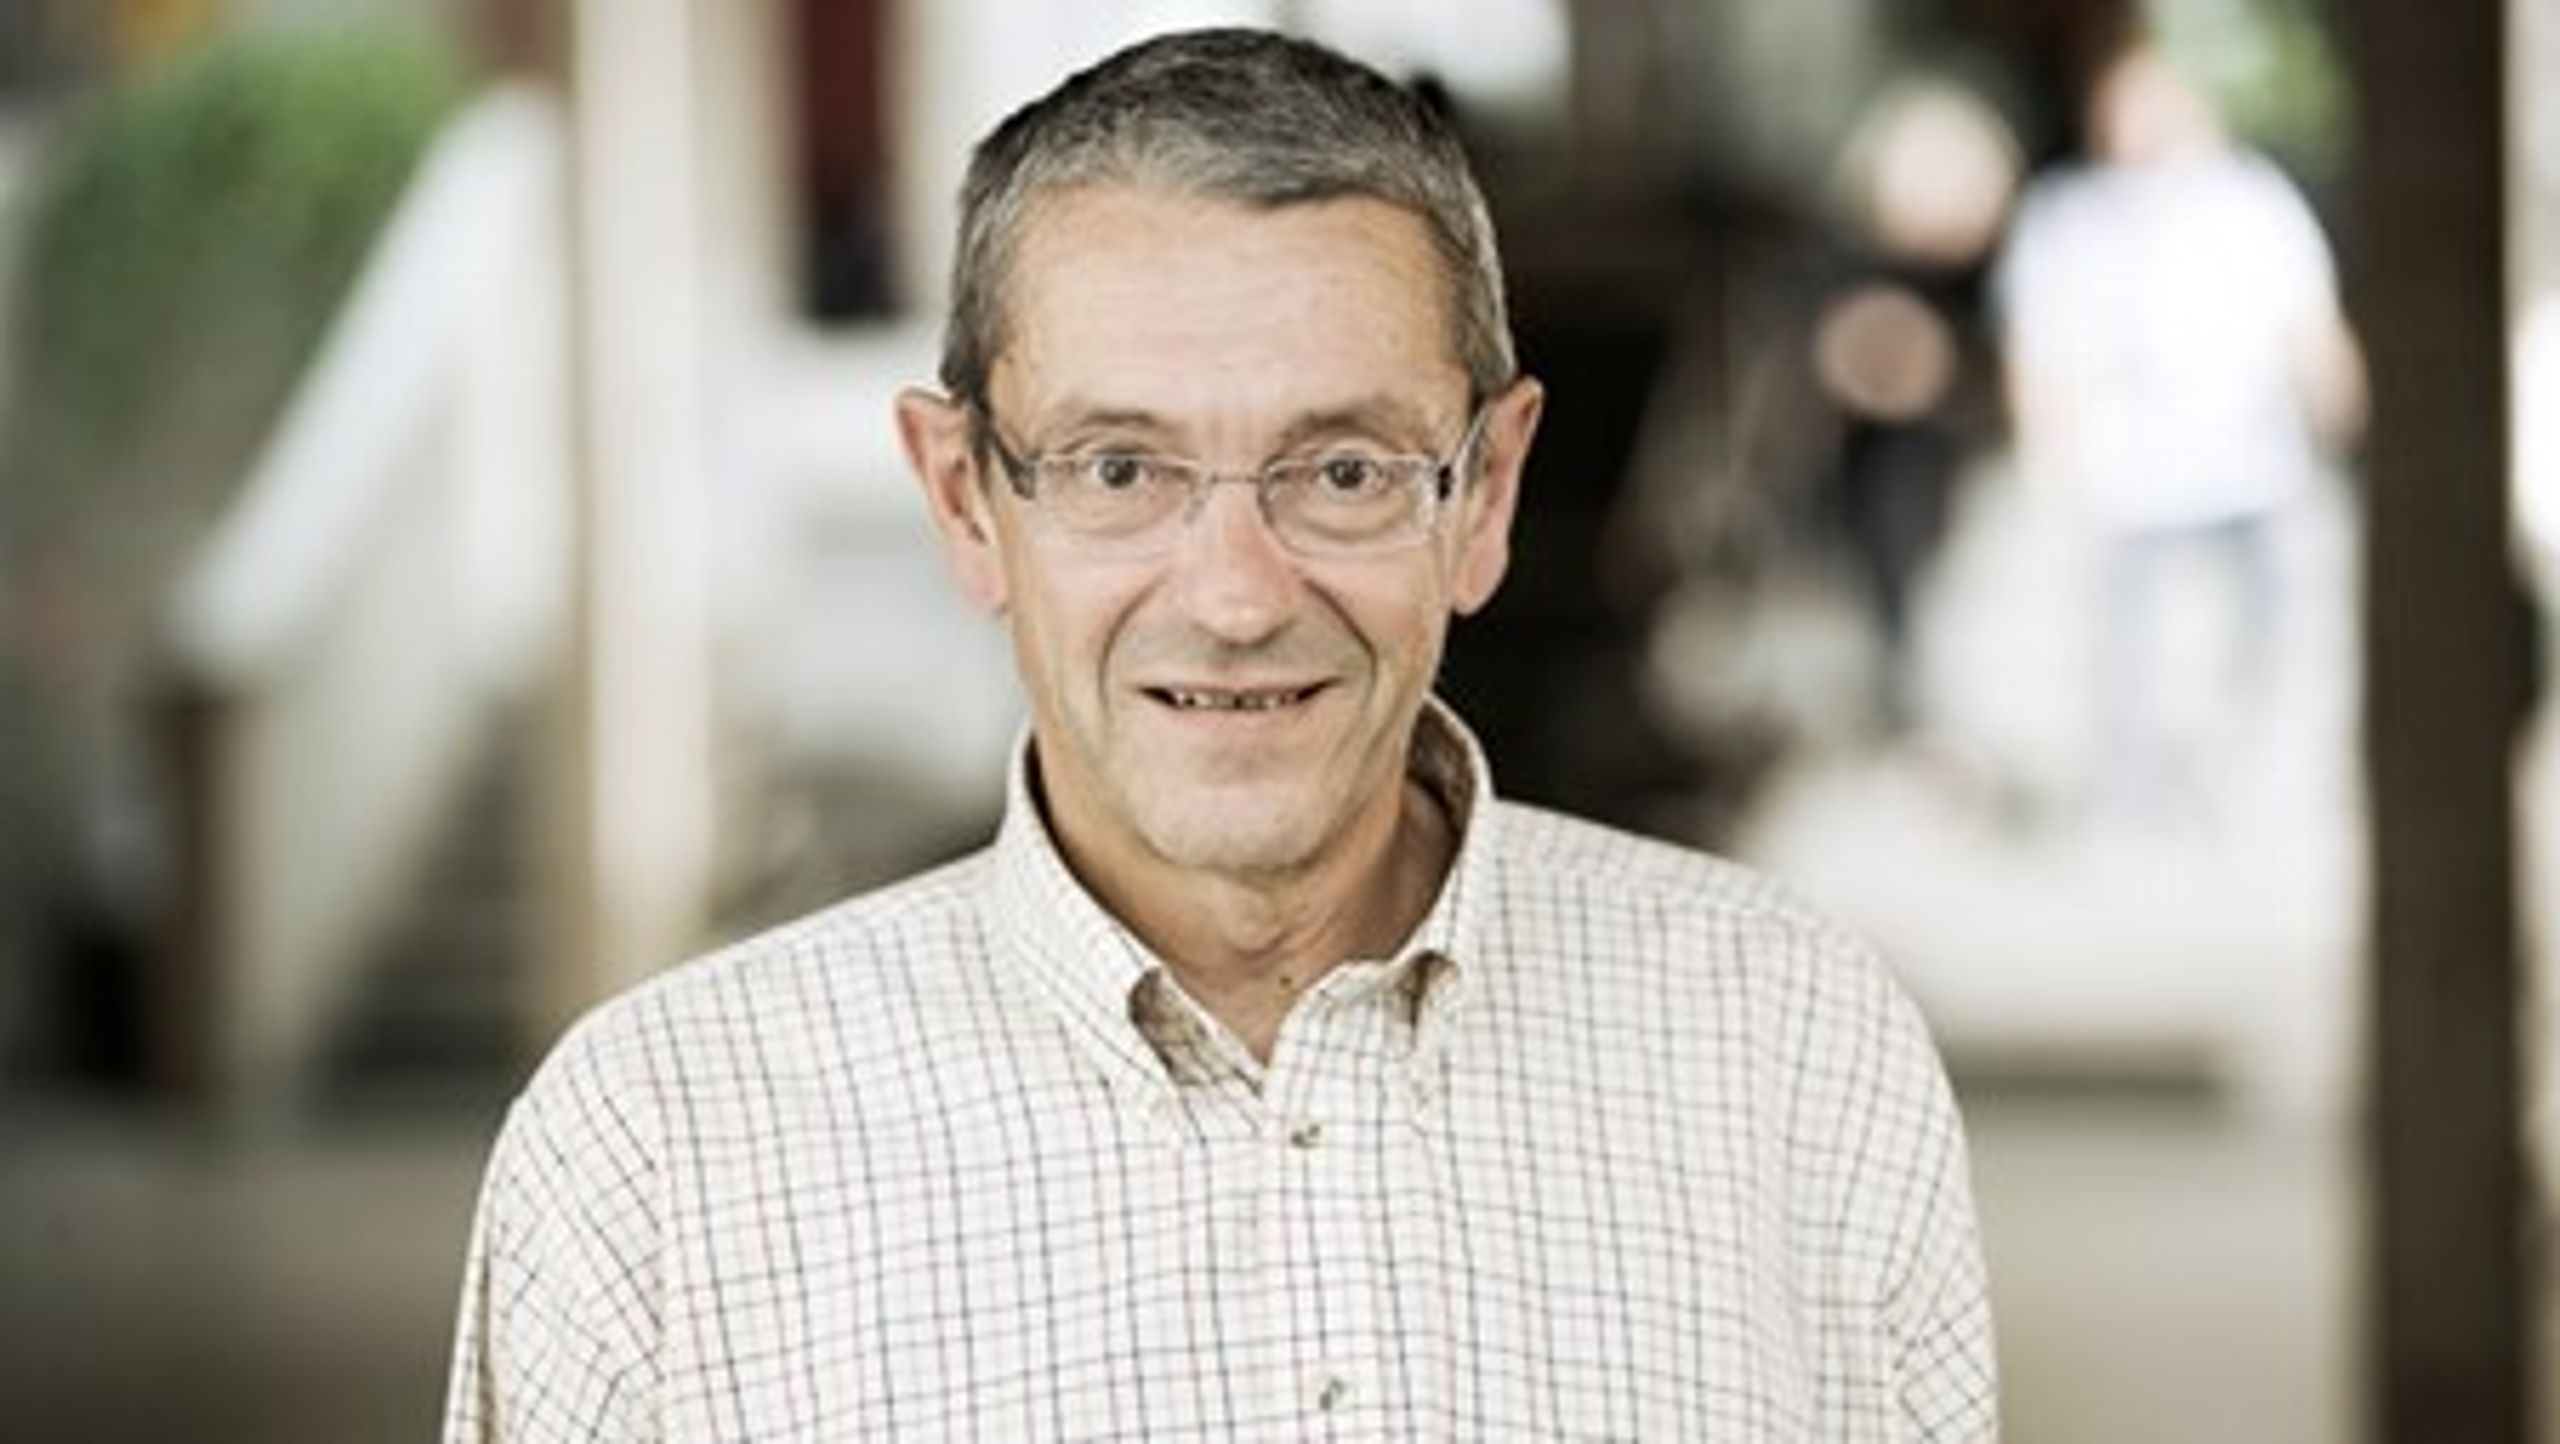 Oluf Jørgensen arbejdede frem til sidste år som forskningschef på Danmarks Medie- og Journalisthøjskole, men blev pensioneret per marts måned i år. Han er fortsat som&nbsp;offentlighedsrådgiver på skolen.